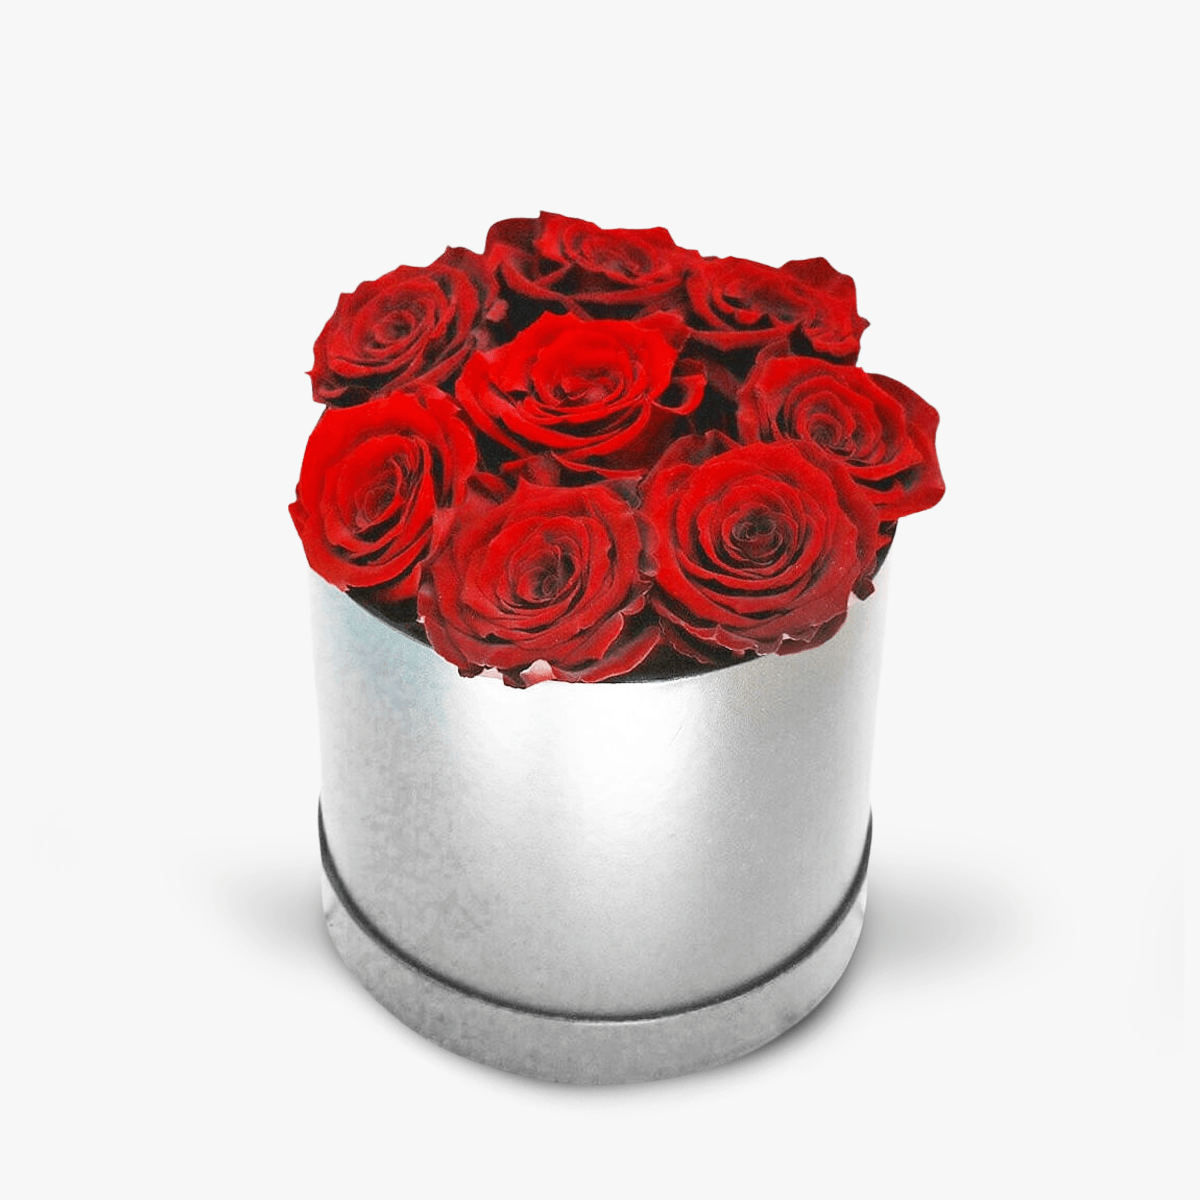 Cutie cu 9 trandafiri rosii, criogenati – Standard criogenati imagine 2022